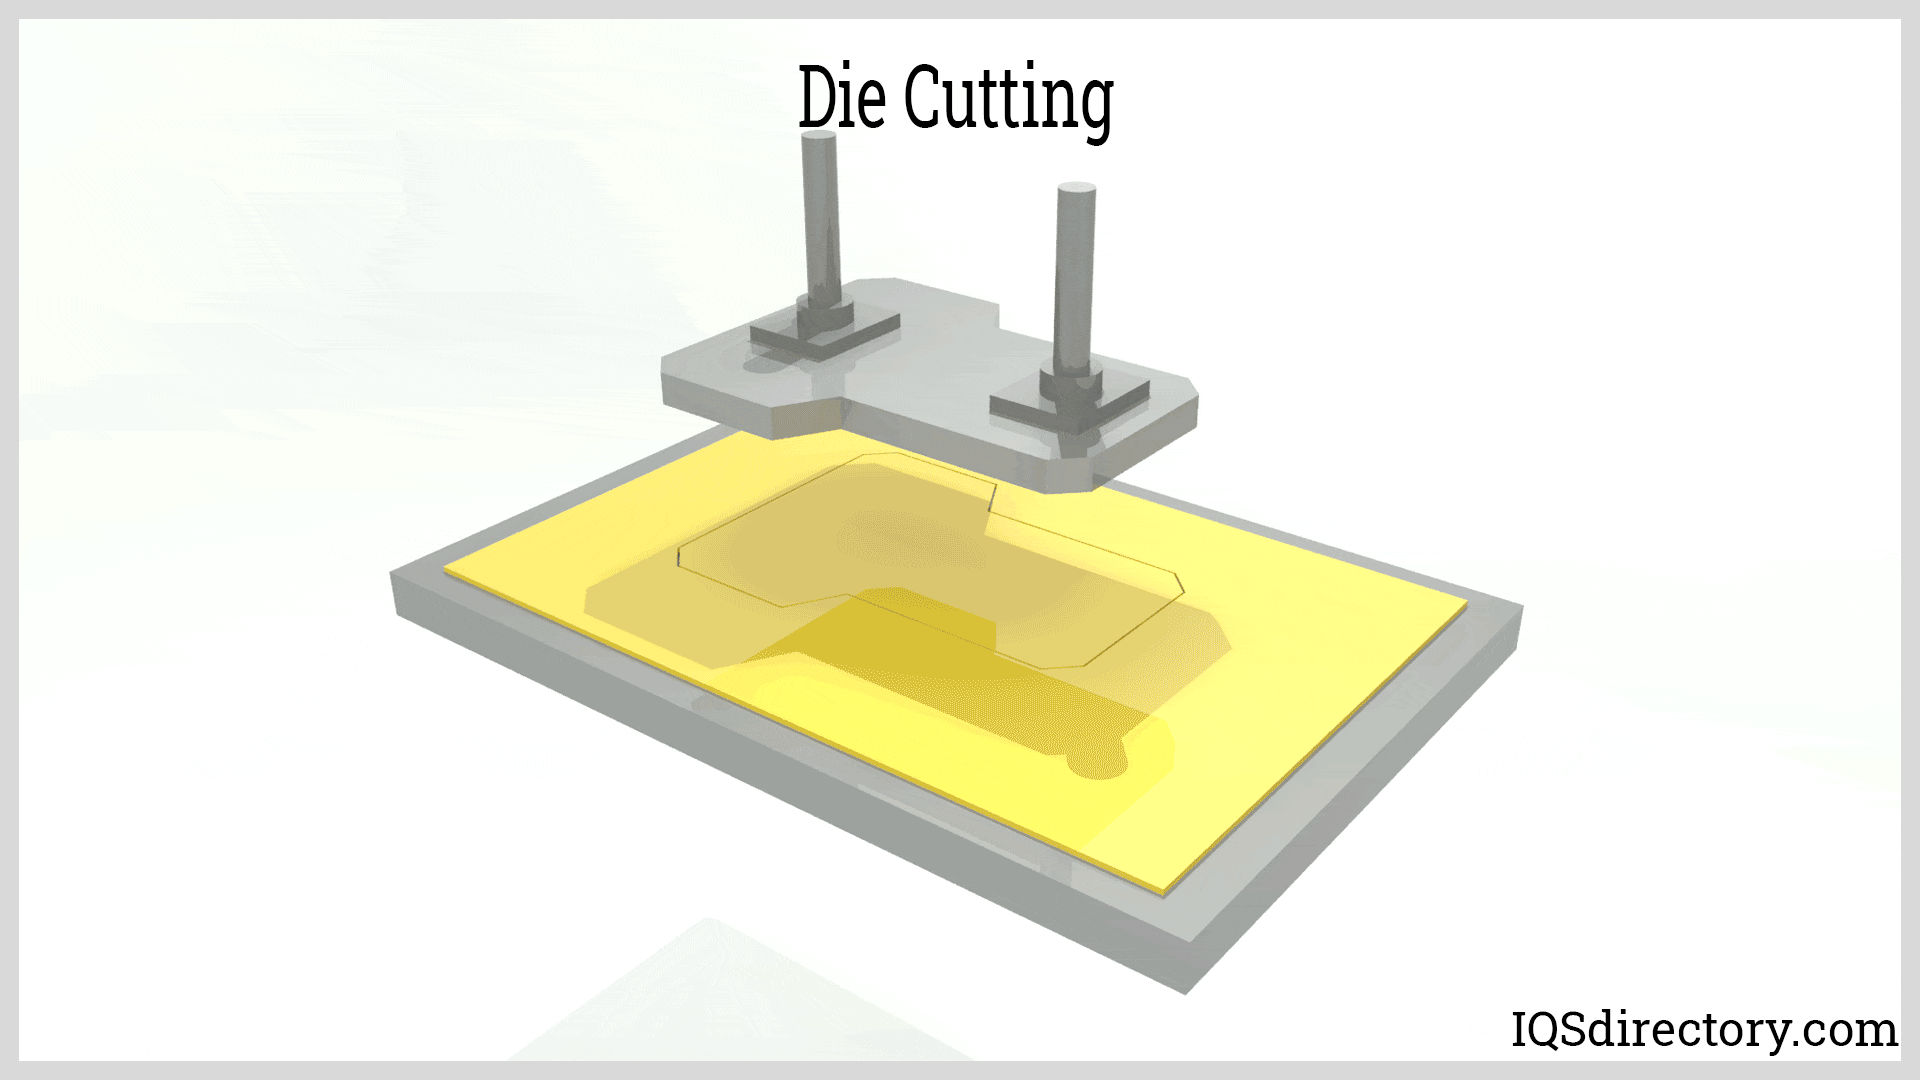 Make Market Mini Die Cutting Machine - Blue & Yellow - 1 each